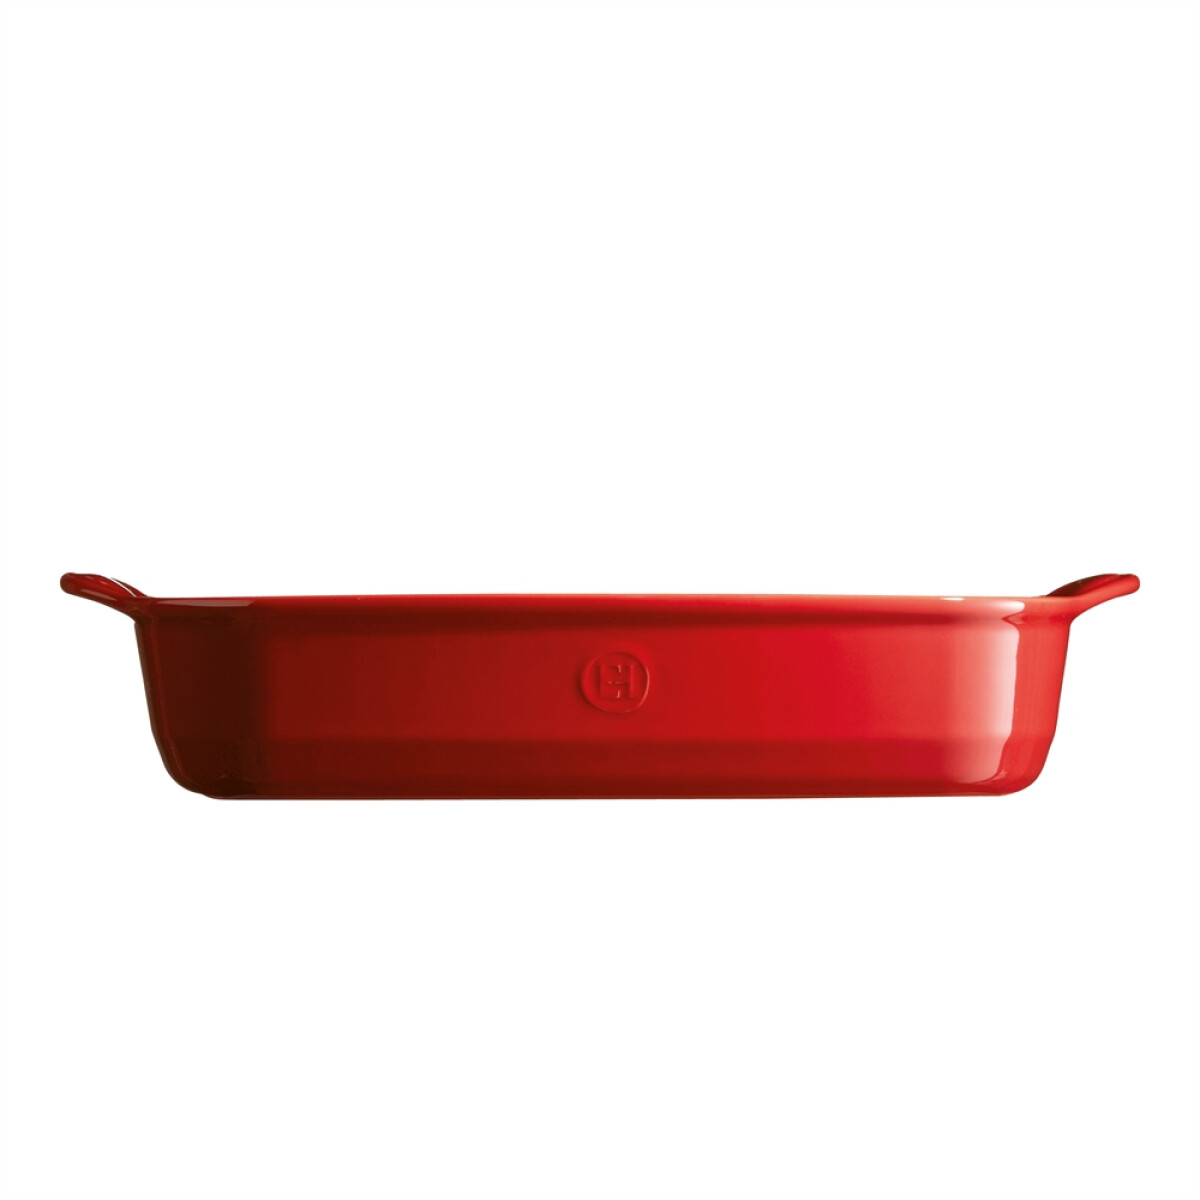 Керамична тава EMILE HENRY LARGE RECTANGULAR OVEN DISH - 42х28 см, цвят червен